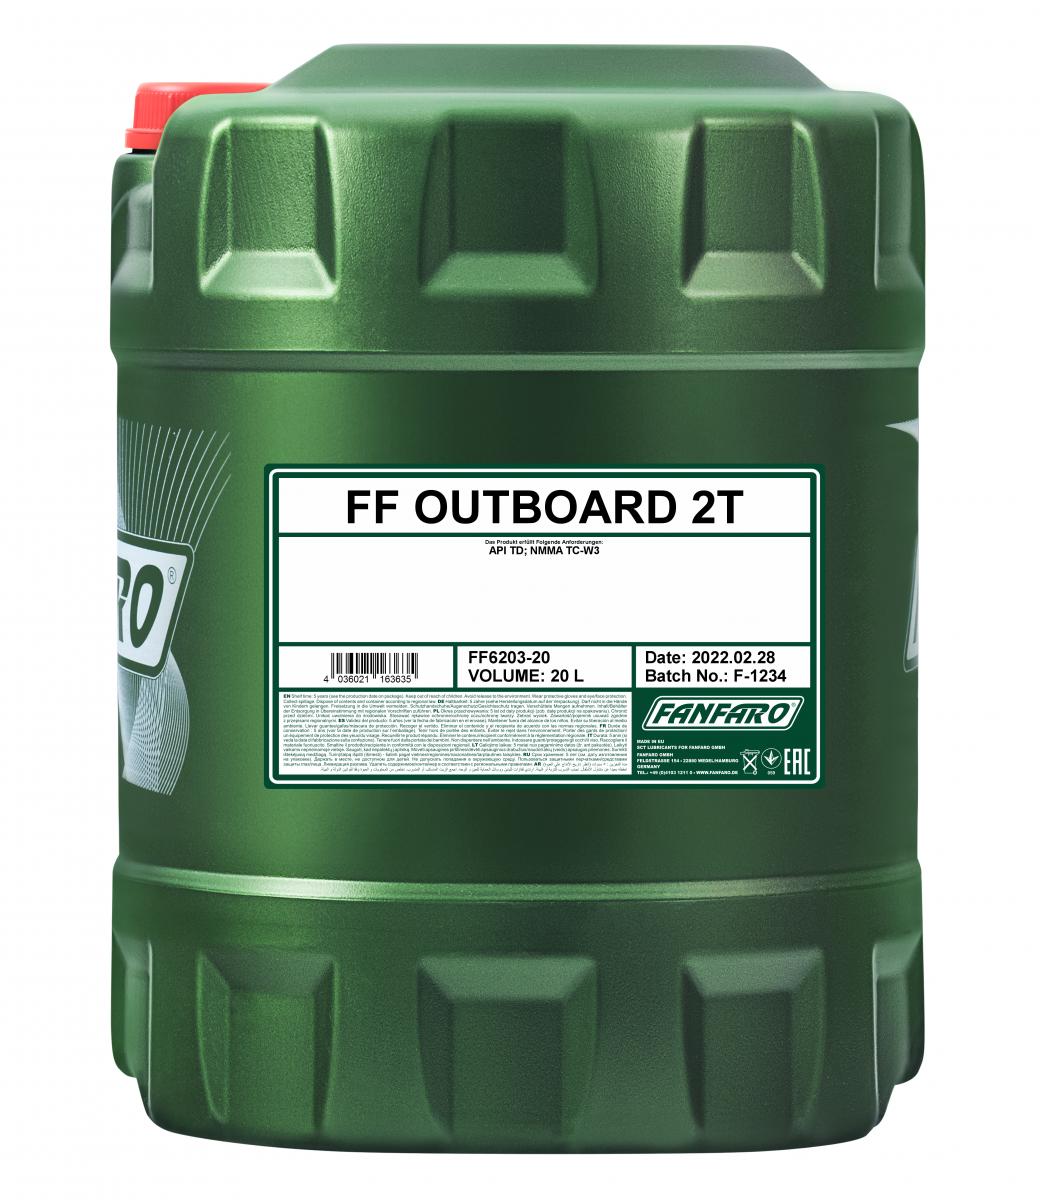 20 Liter (1x20) FANFARO Outboard 2T API TD Außenbord 2 Takt NMMA TC-W3 Boot